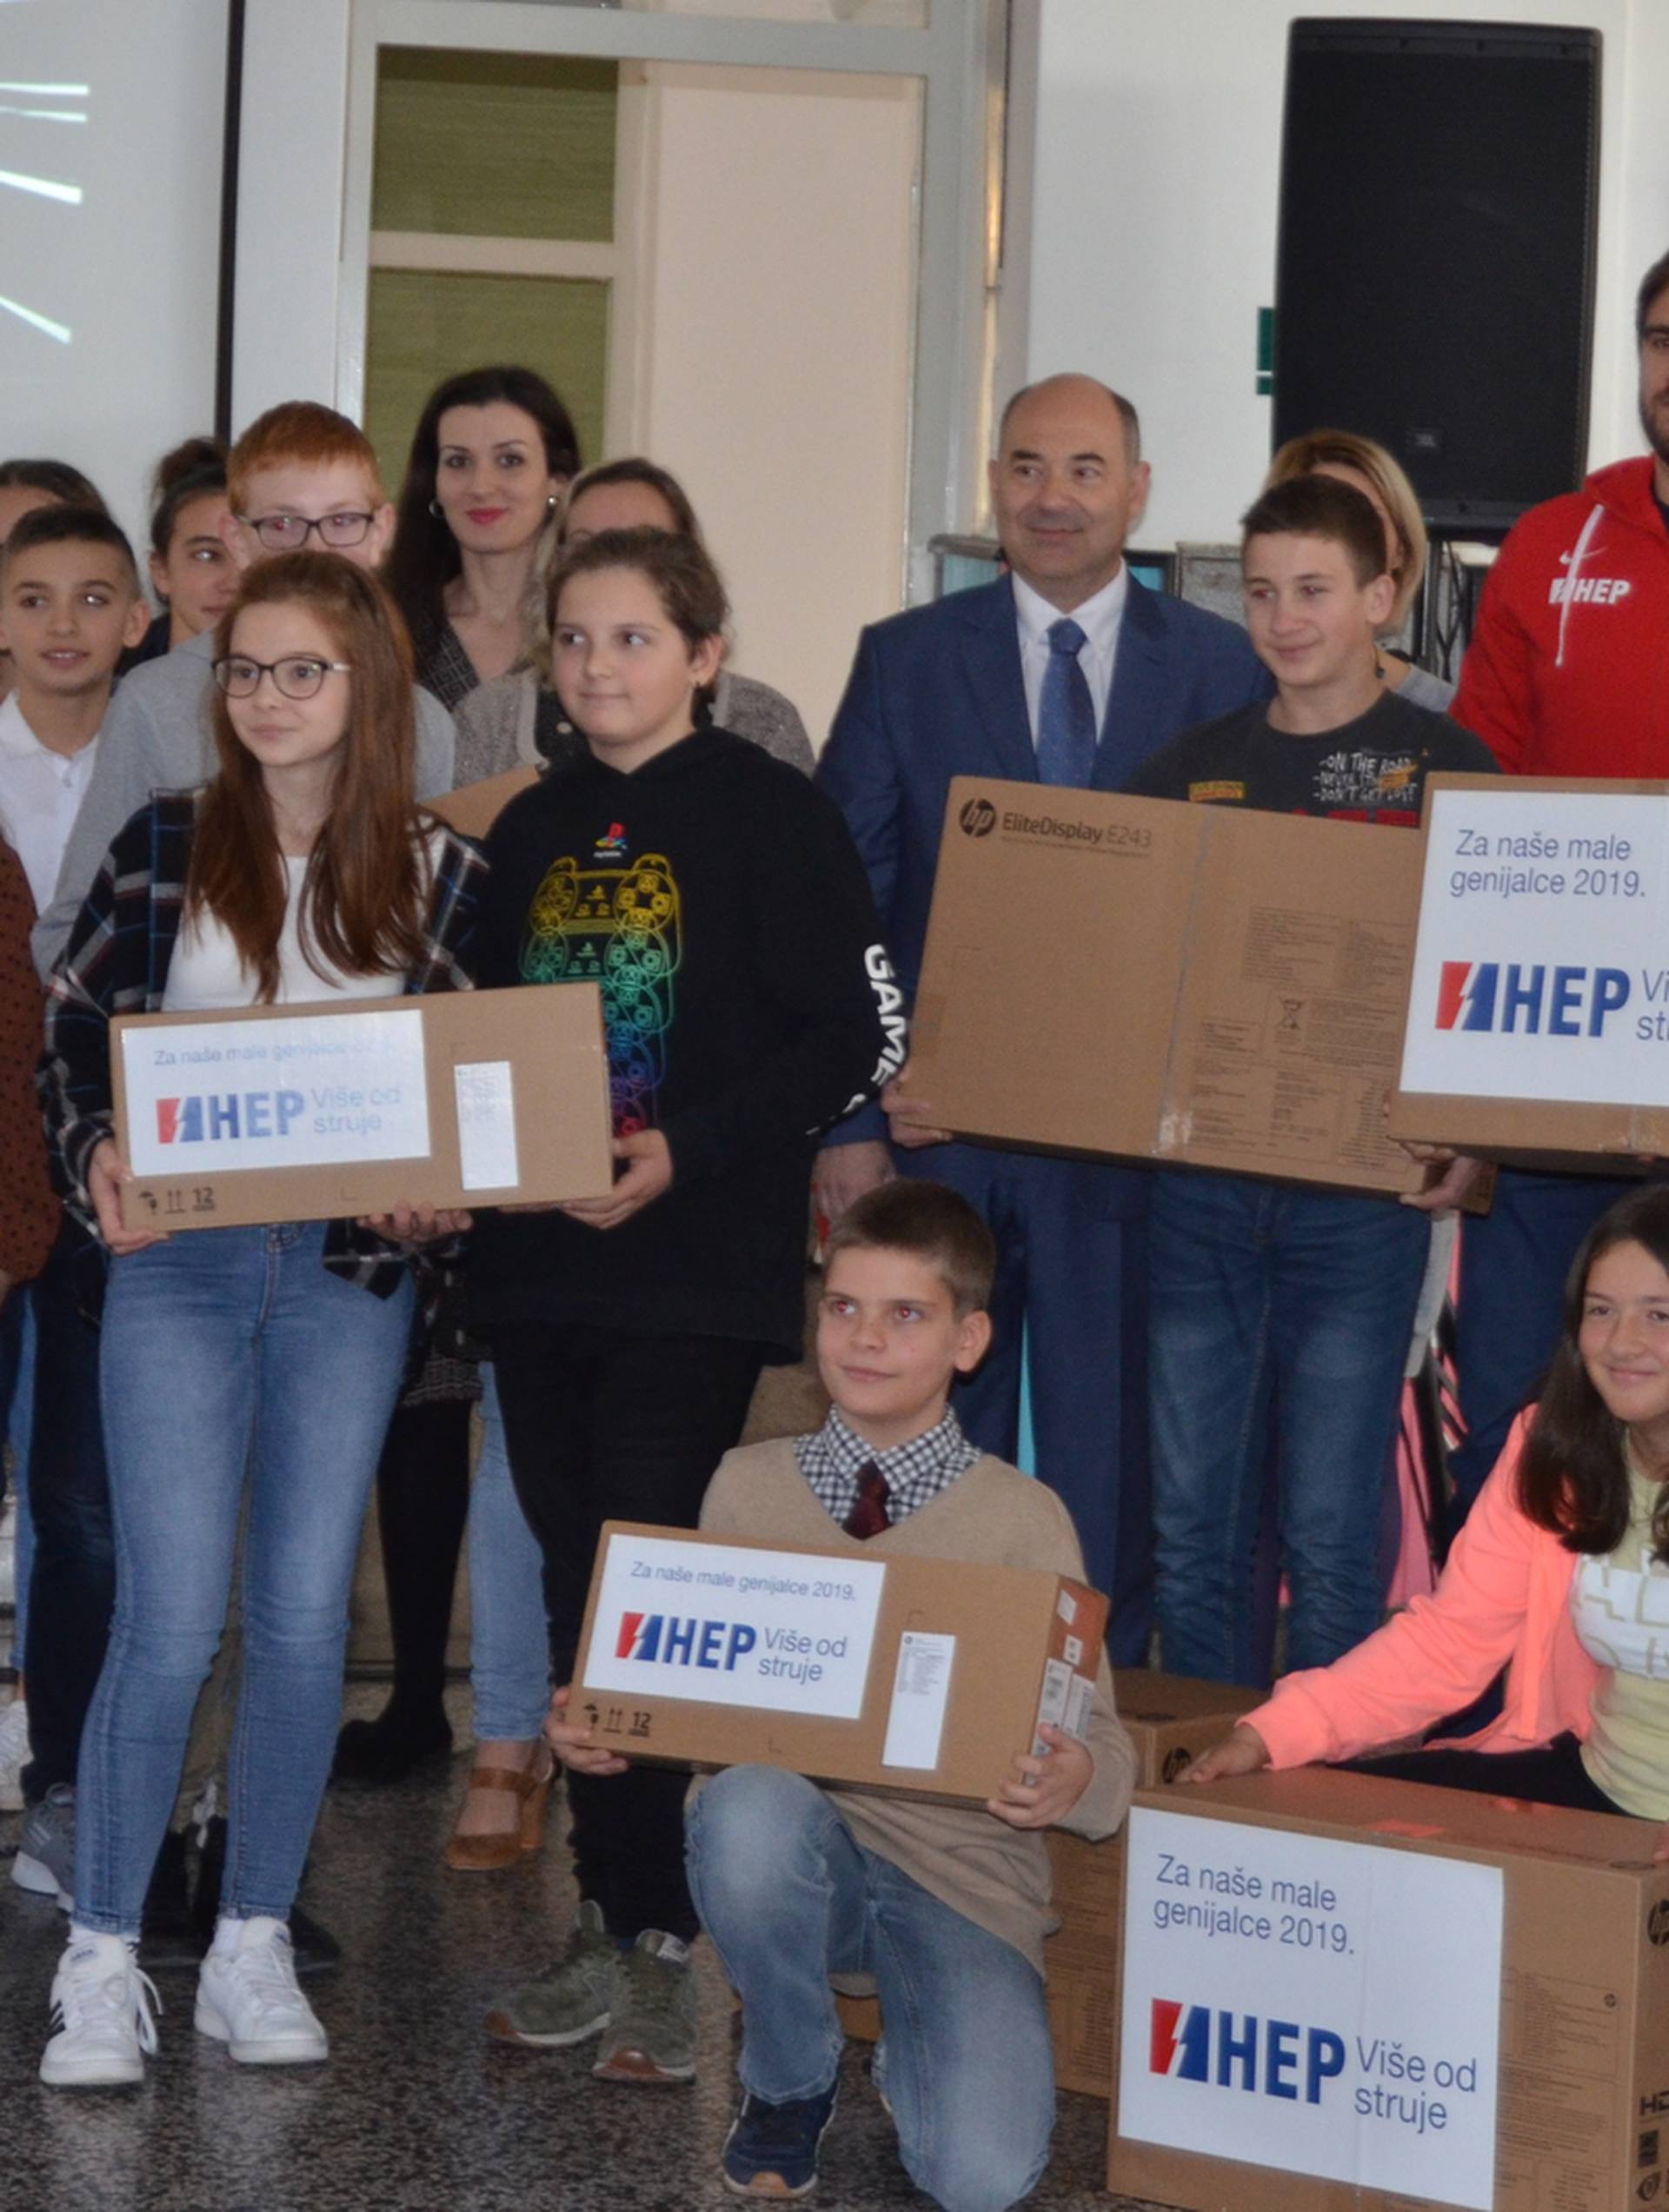 HEP daruje 100 računala za 29 osnovnih škola diljem Hrvatske